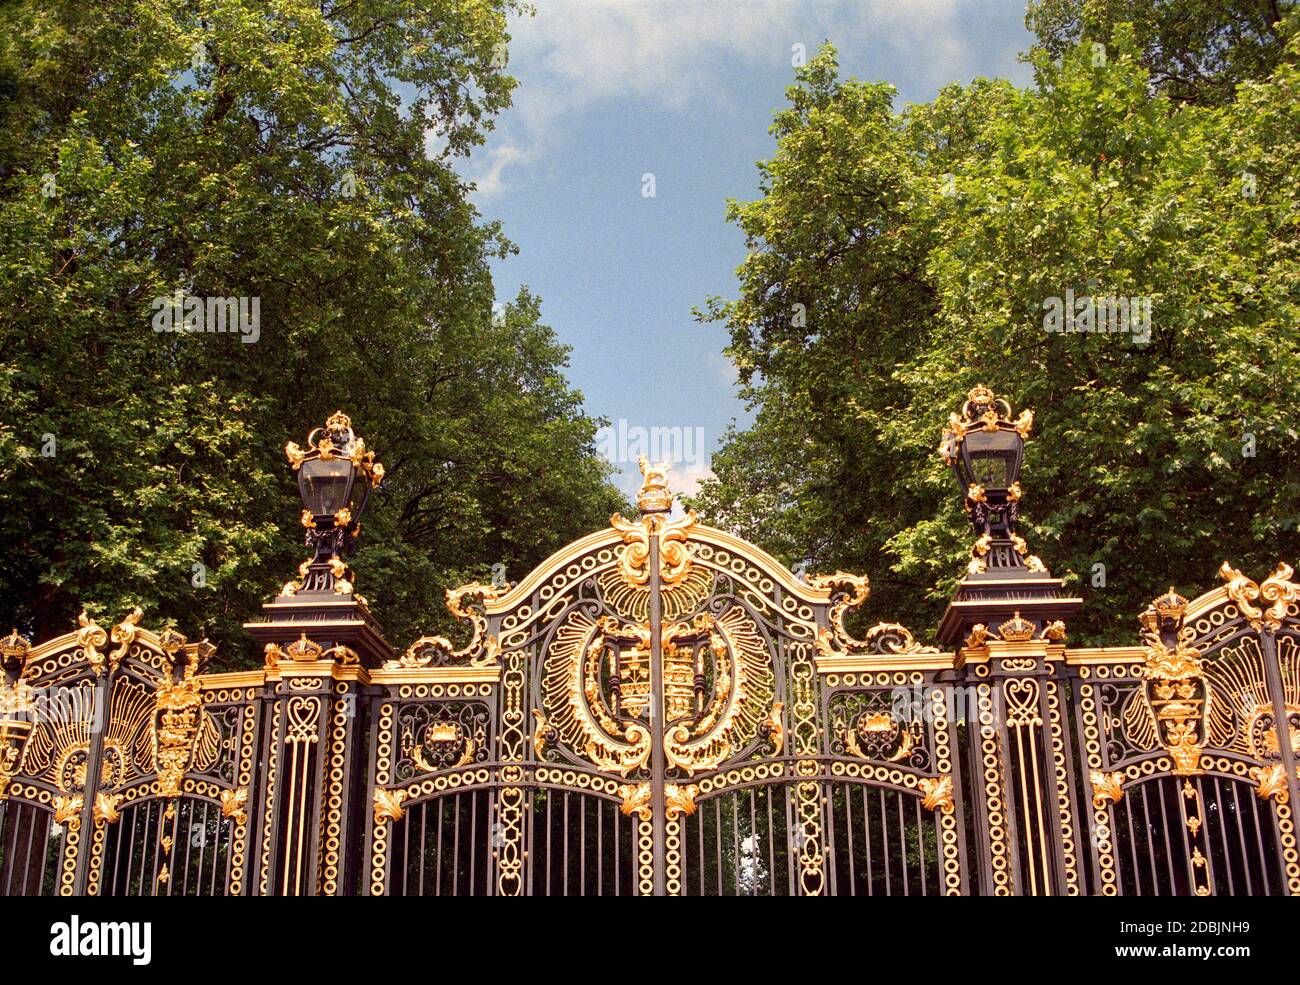 Dettaglio di un cancello presso Buckingham Palace Foto Stock